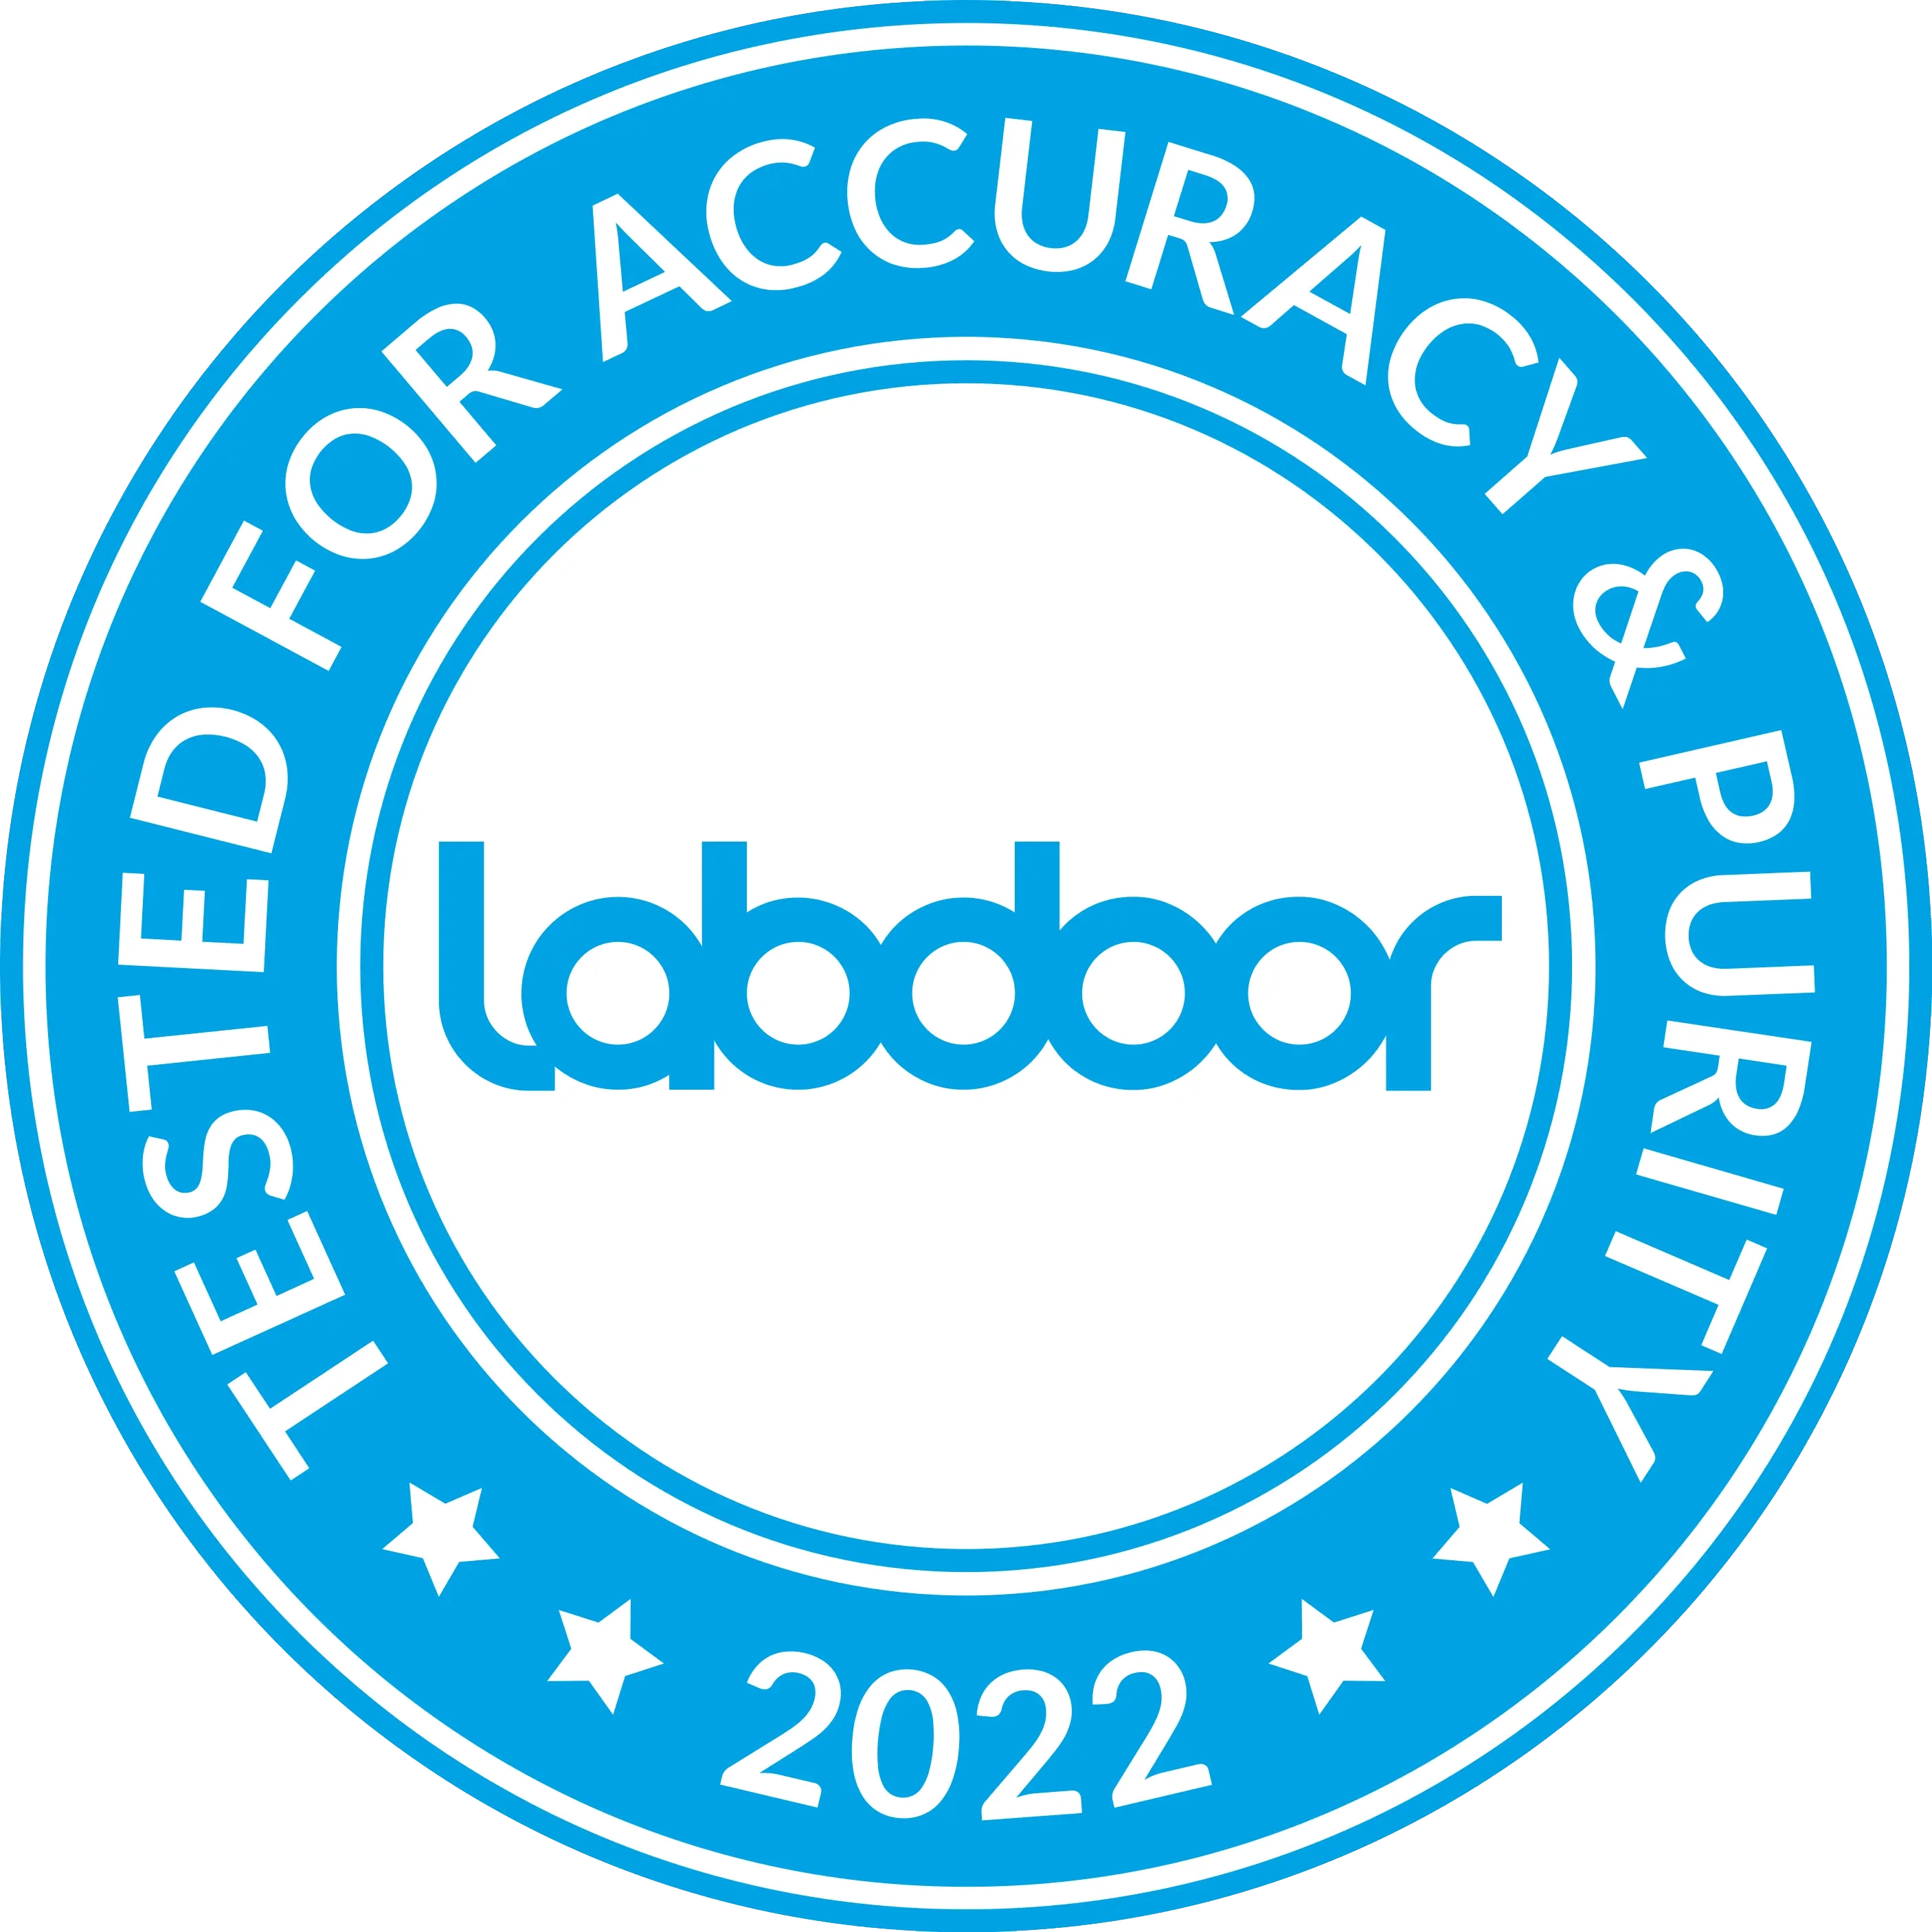 Labdoor Certified